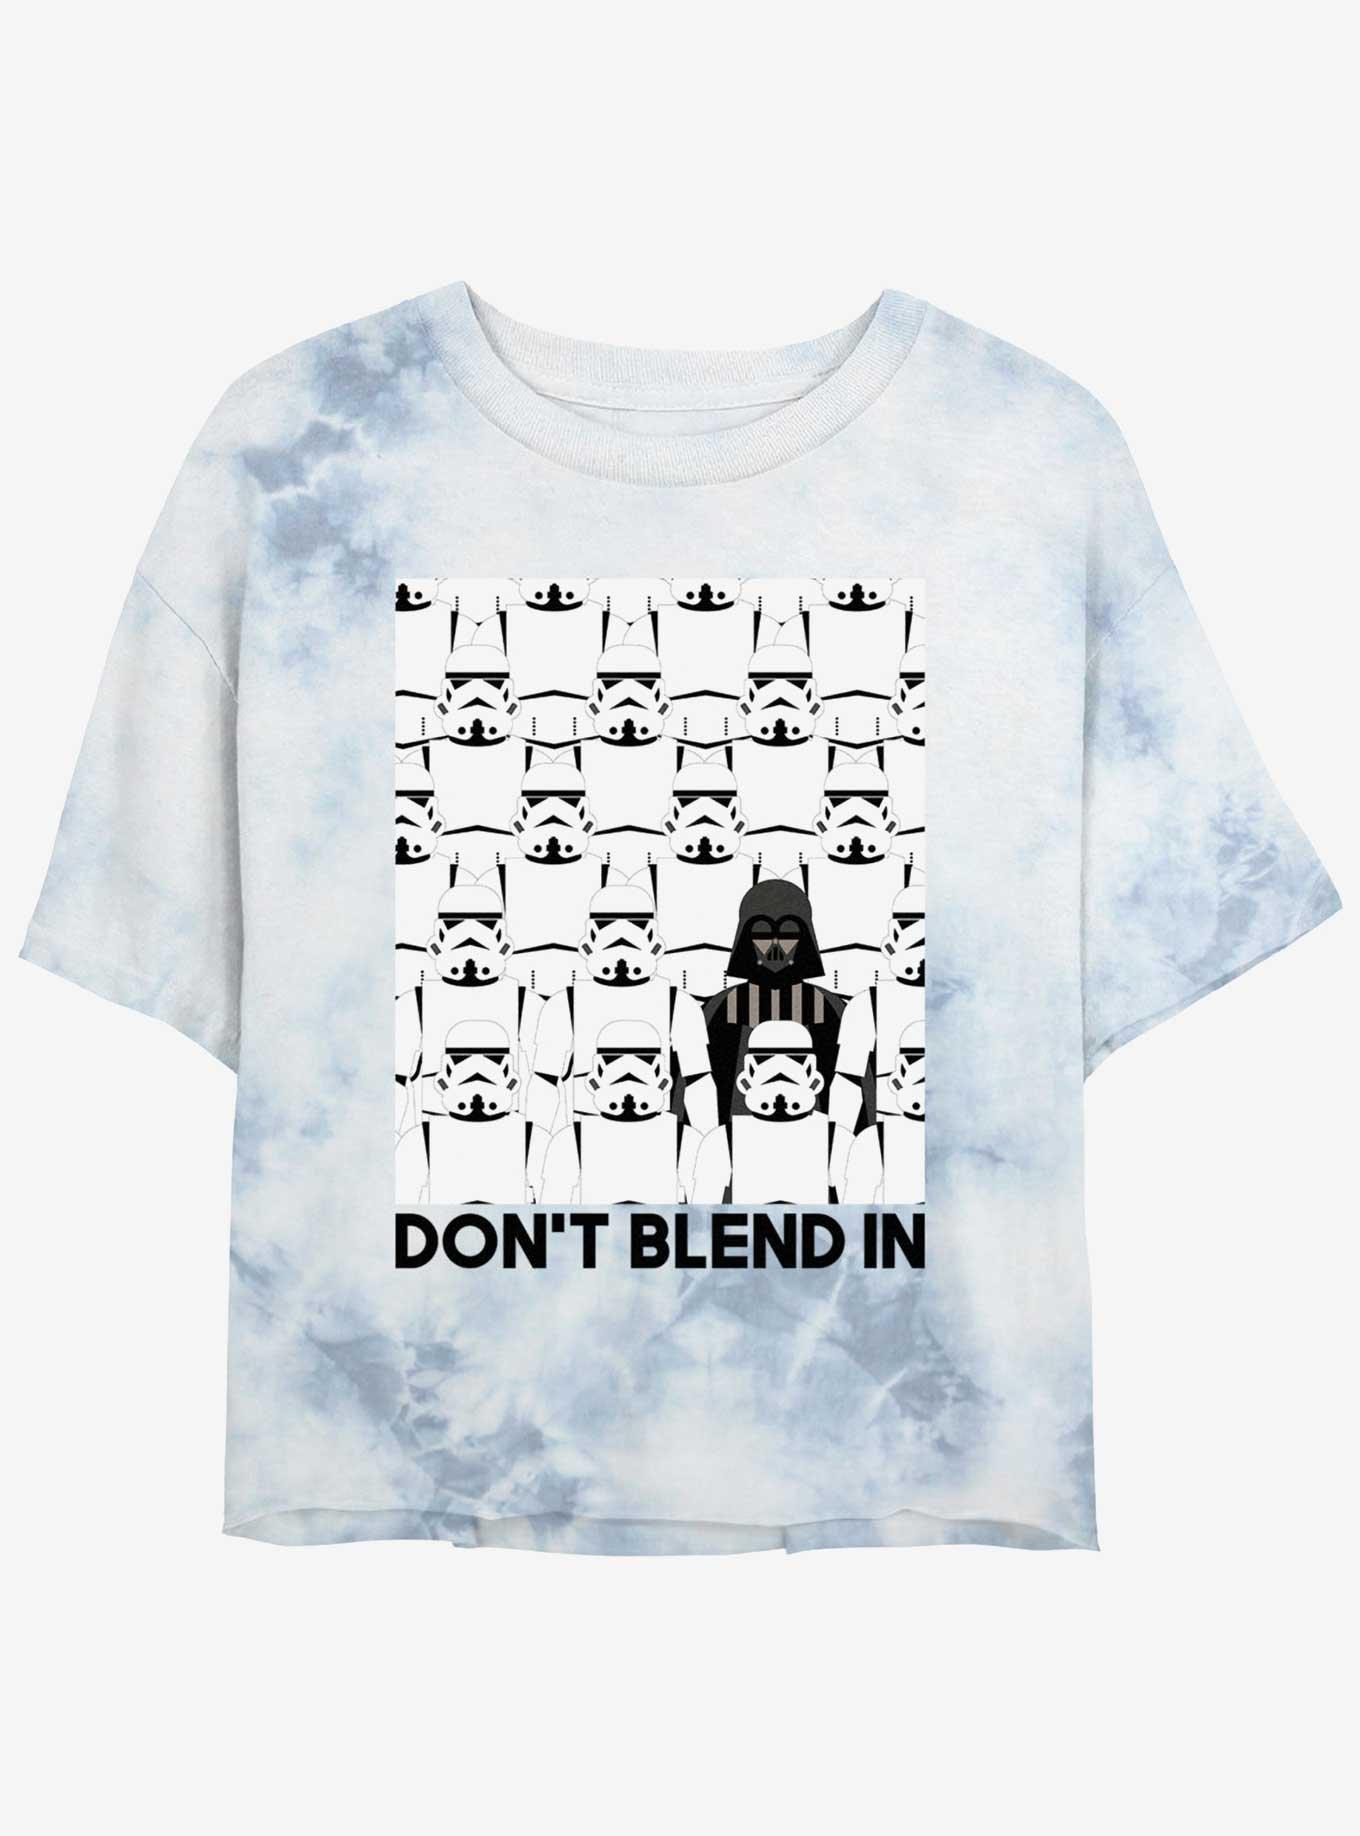 Star Wars Darth Vader Don't Blend In Womens Tie-Dye Crop T-Shirt, WHITEBLUE, hi-res